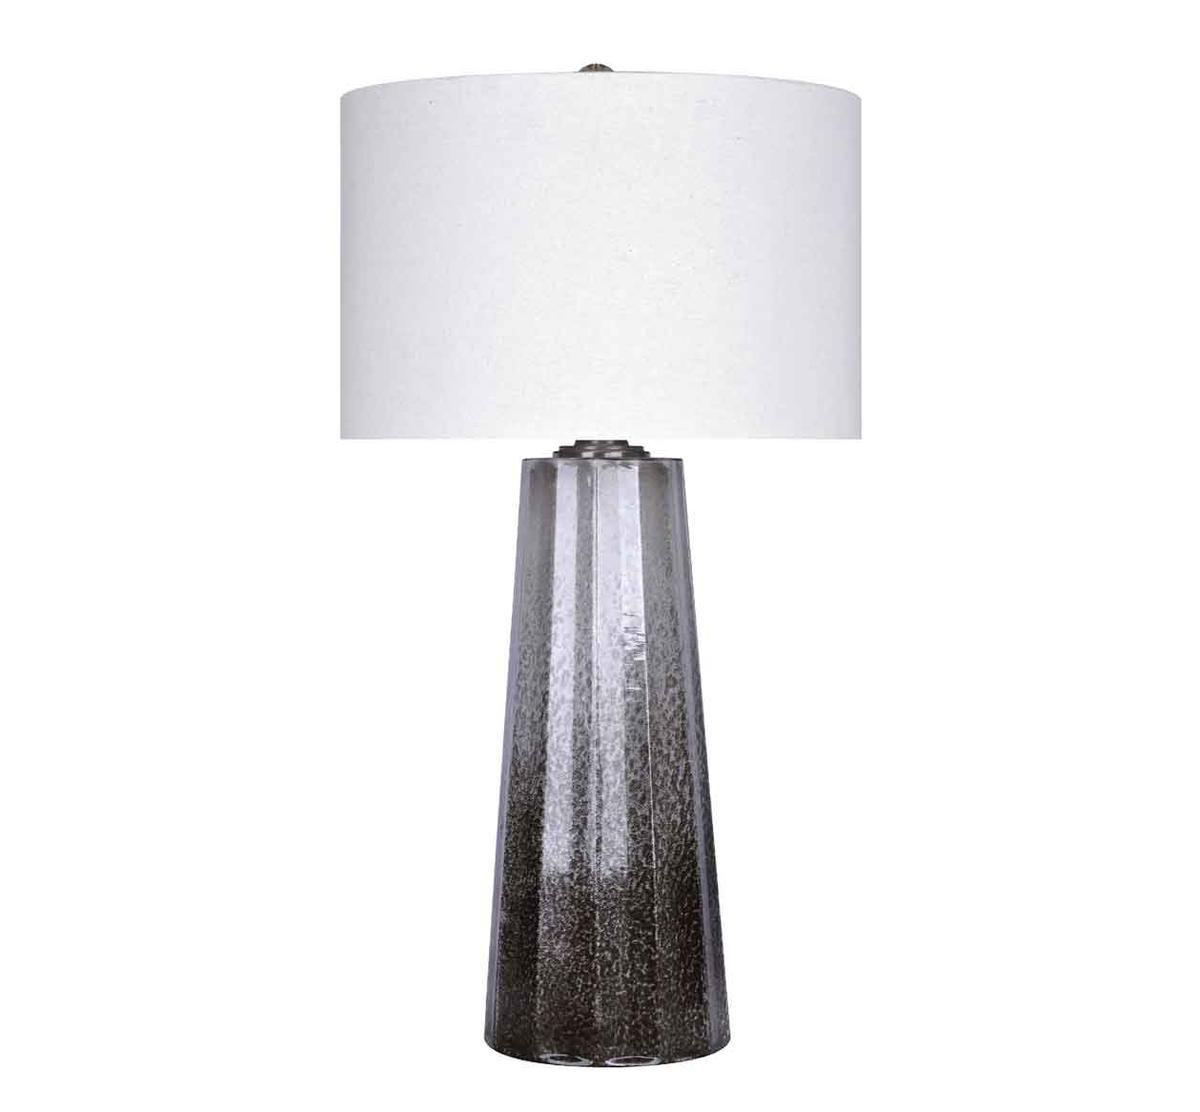 Opaline Lamp Bad Home Furniture More, Benton Table Lamp